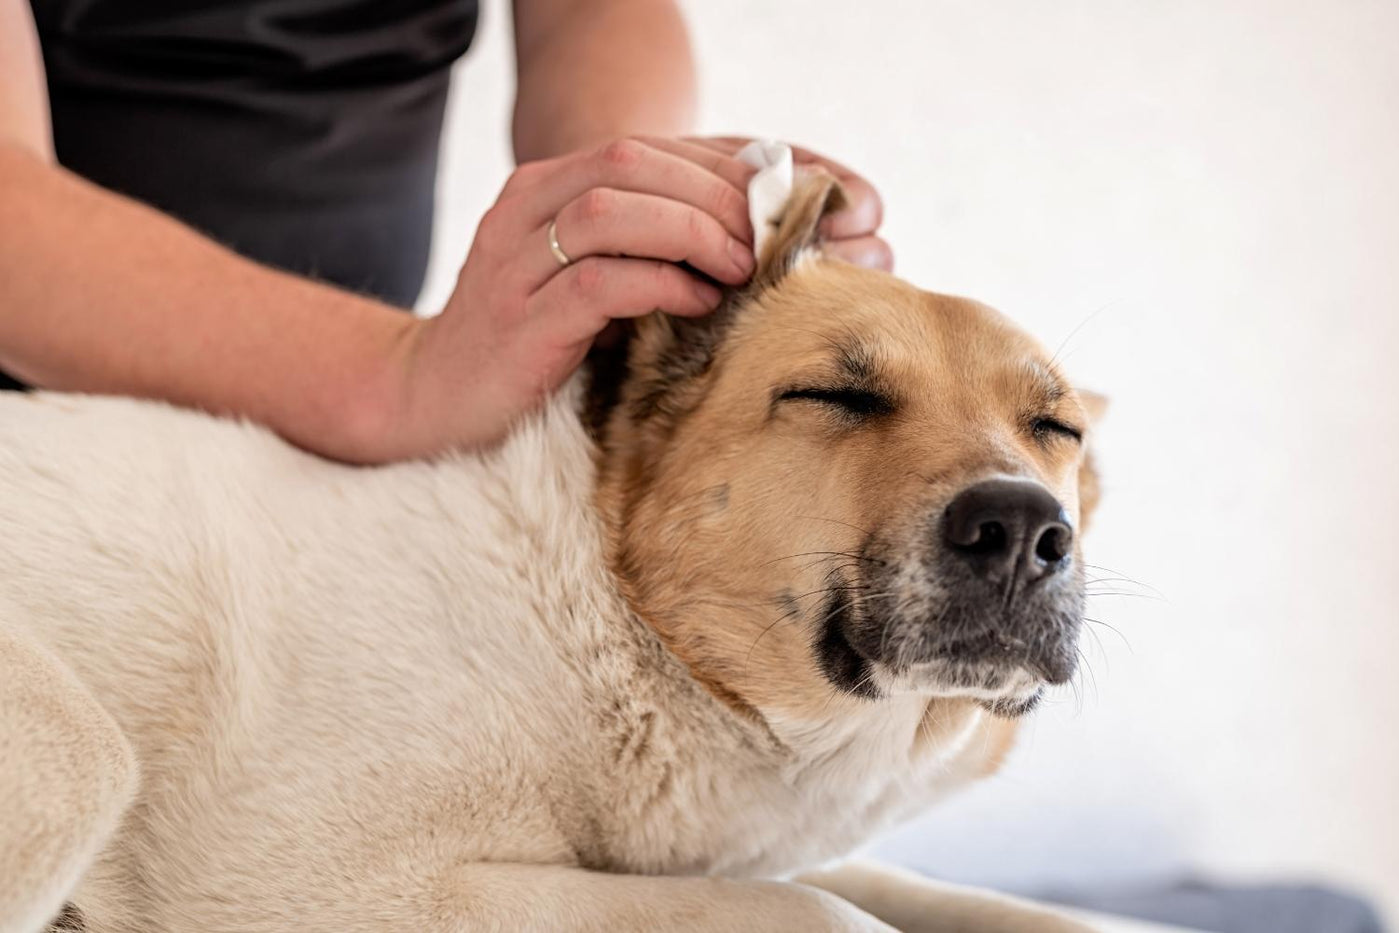 Hundeohren richtig reinigen: So klappt die Ohrenpflege Deiner Fellnase